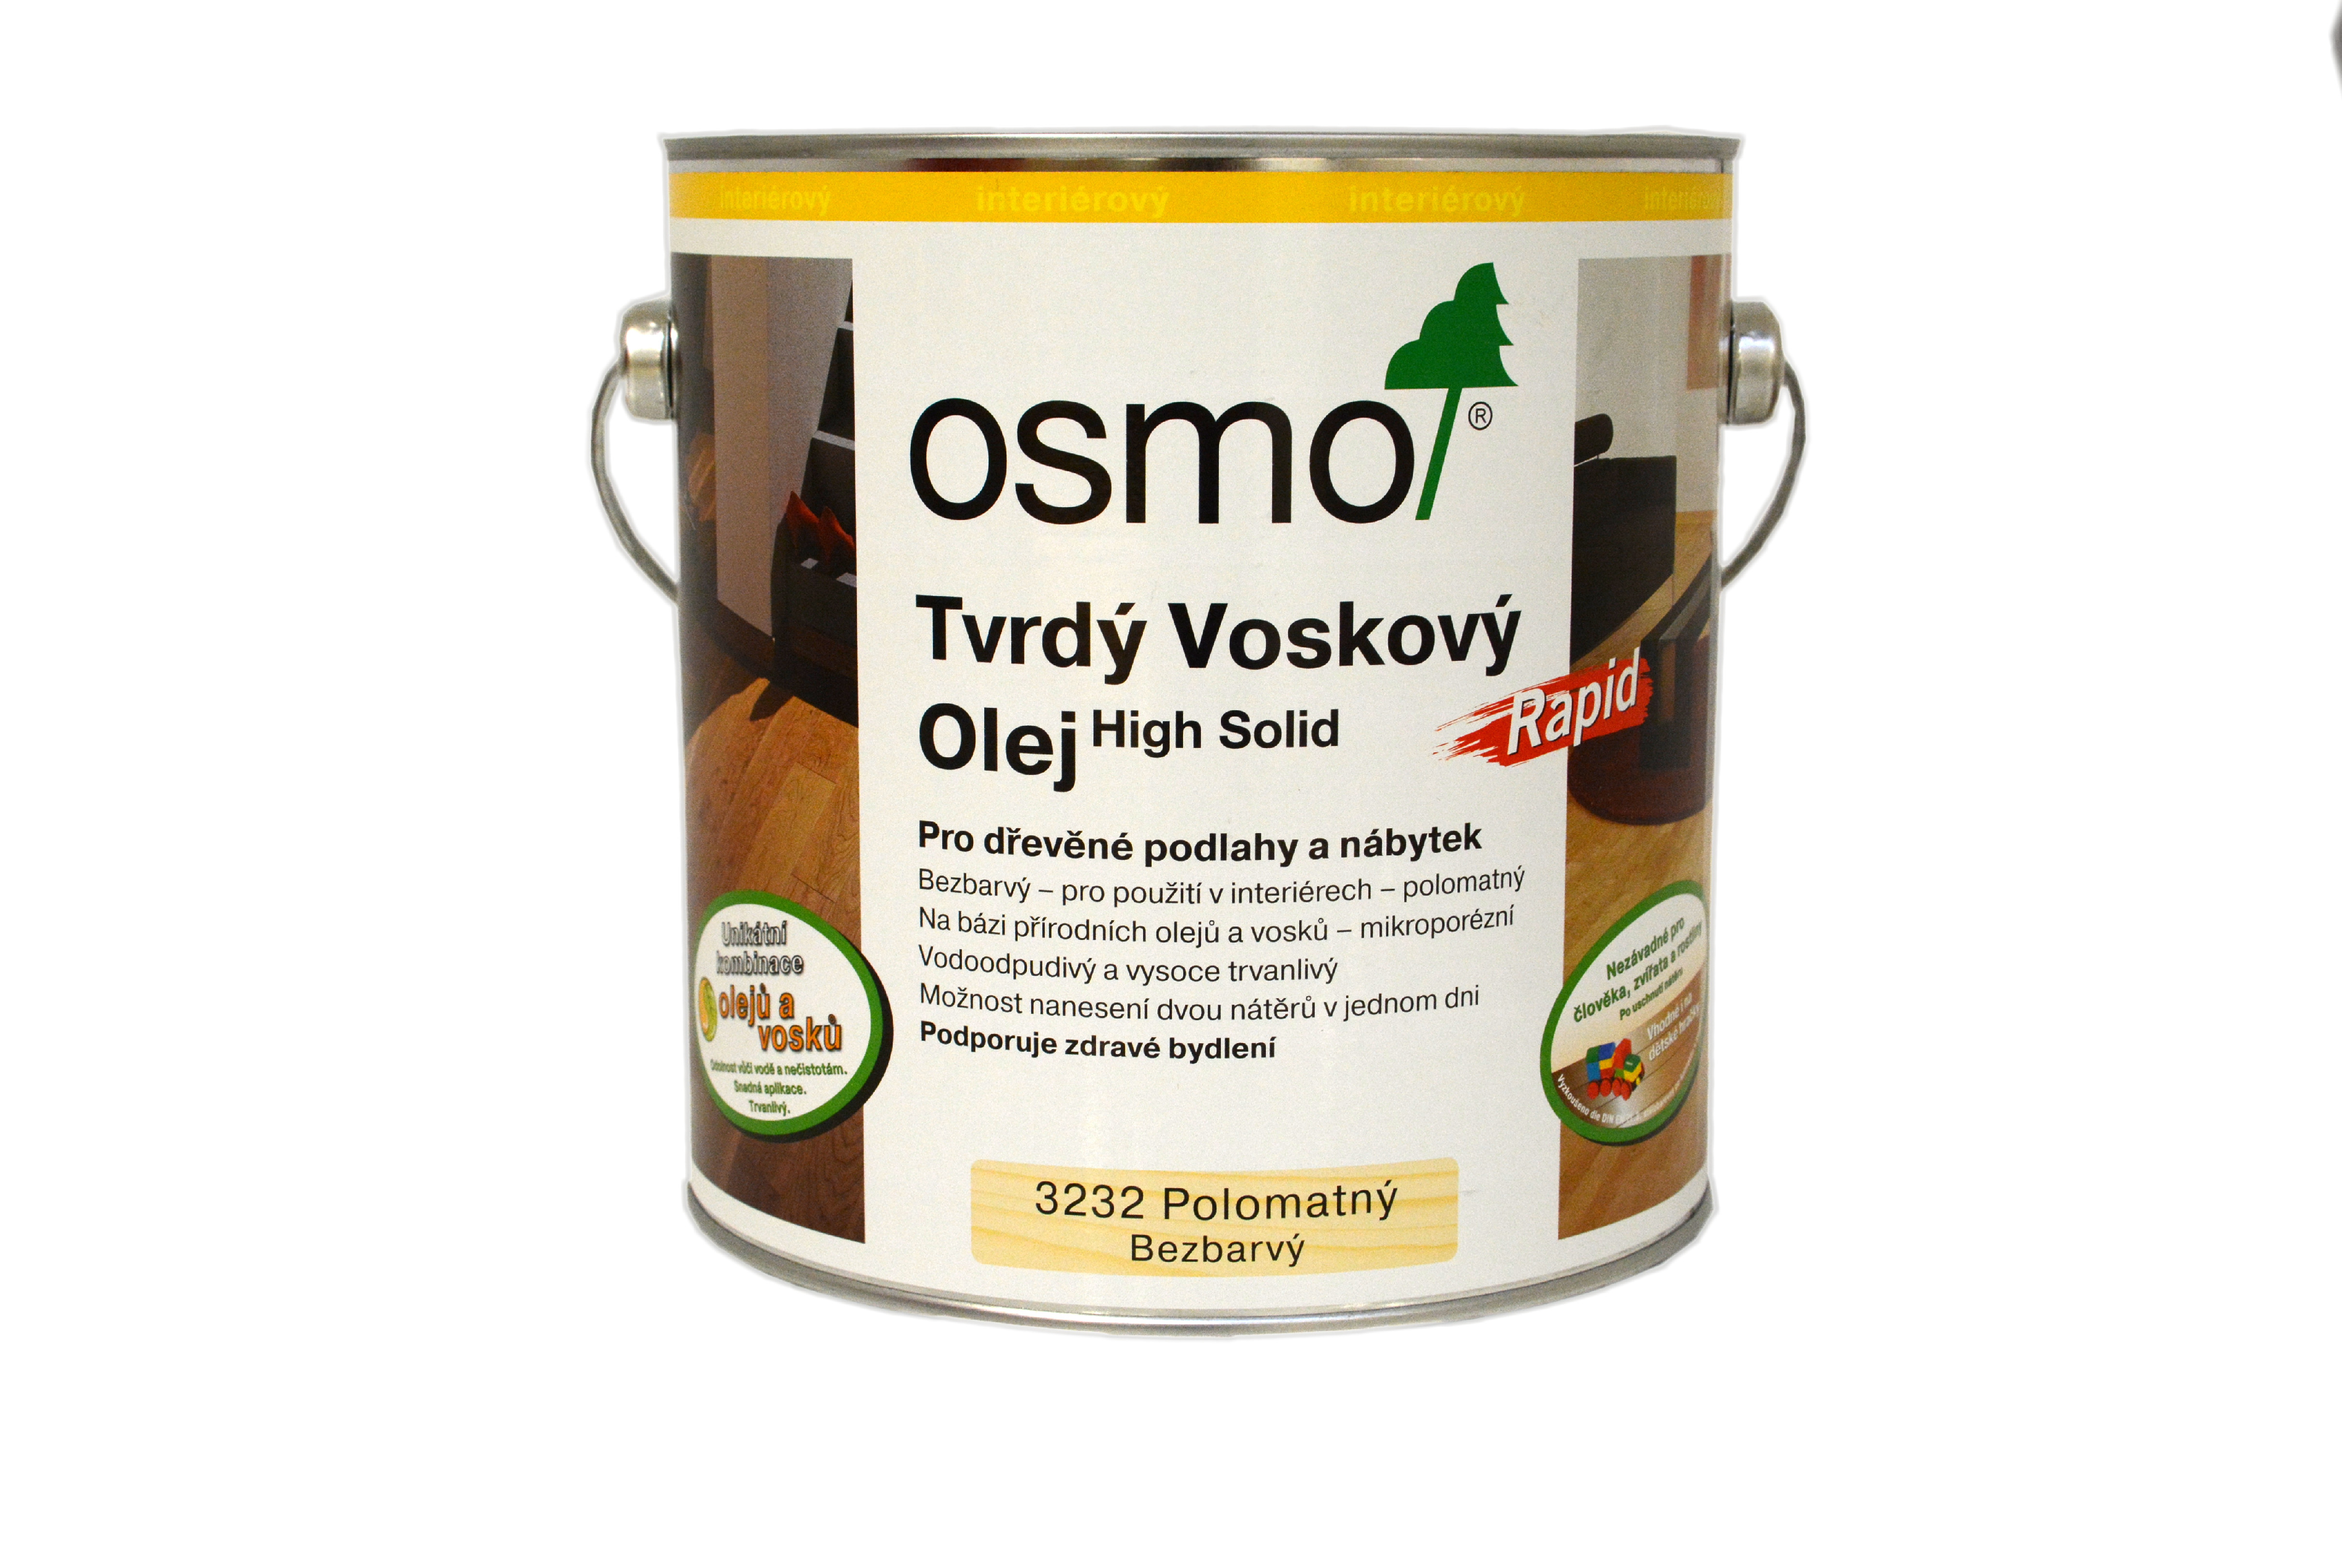 OSMO Tvrdý voskový olej RAPID Odstín: 3240 bílý transparentní, Velikost balení: 0,75 l